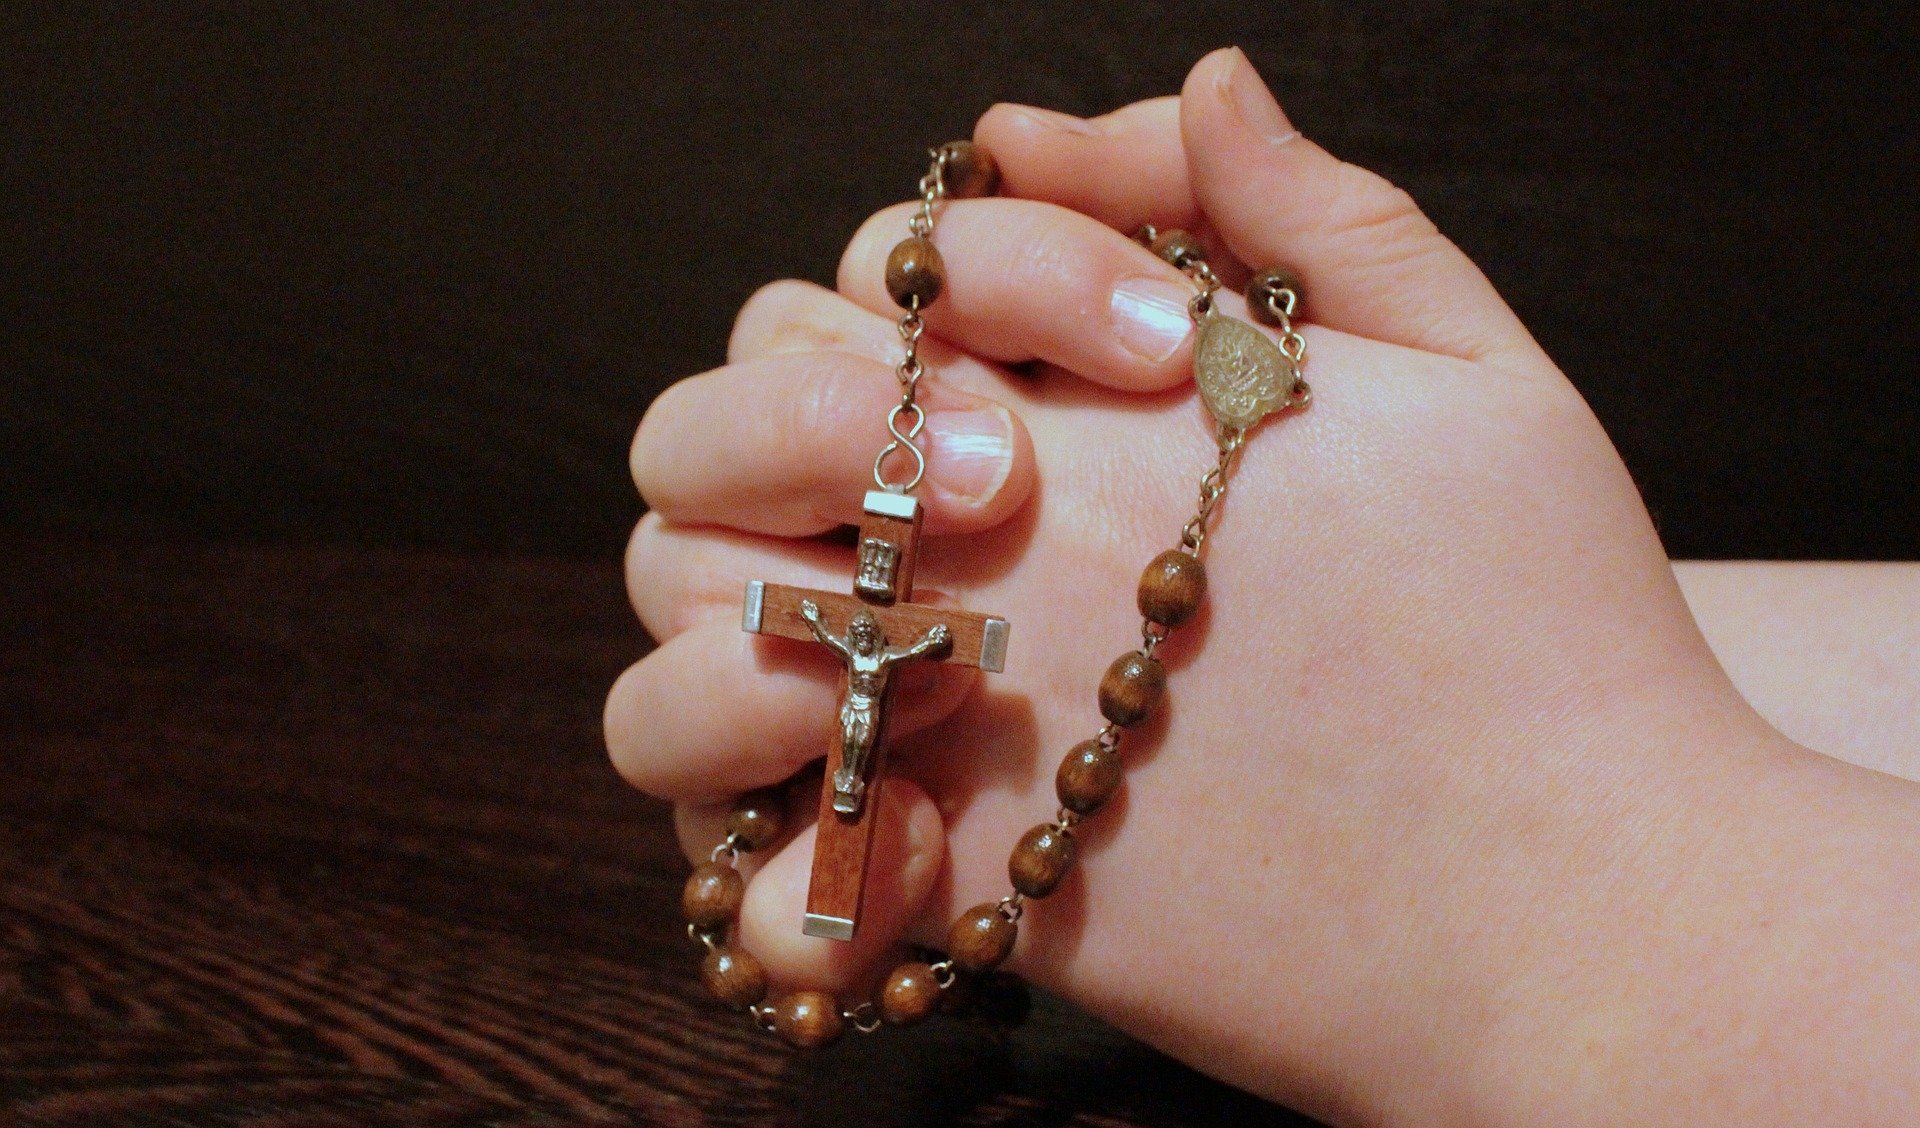 Prayer to St Bernadette